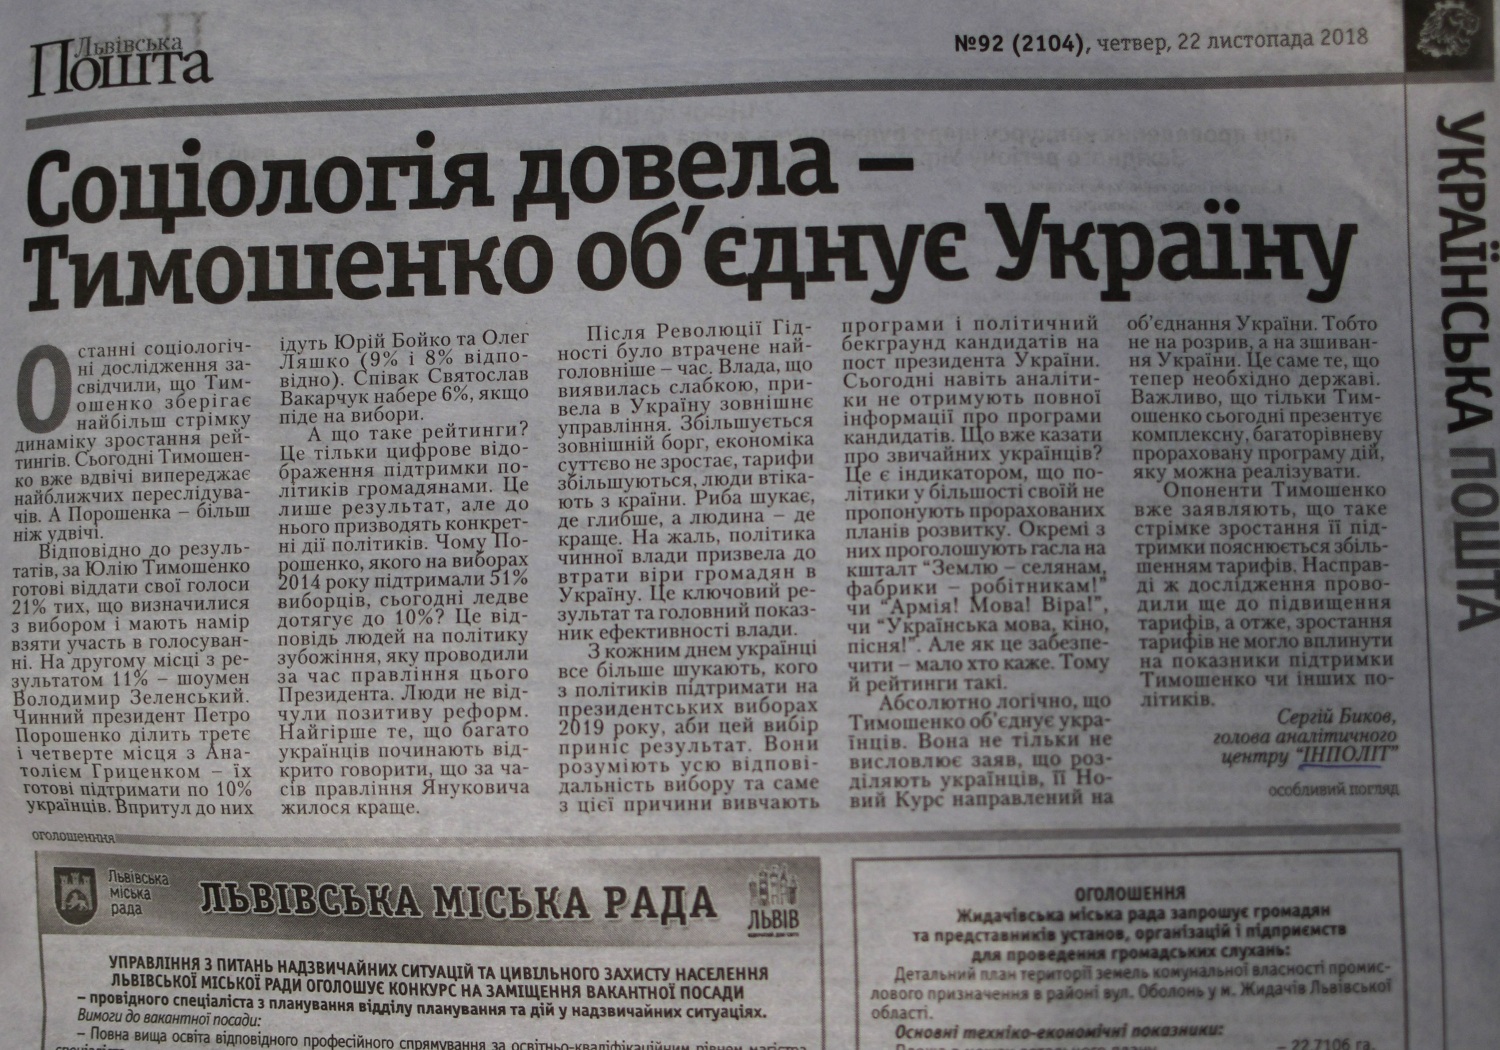 29.11.18 Lviv foto materialy v gazeti Lvivska poshta